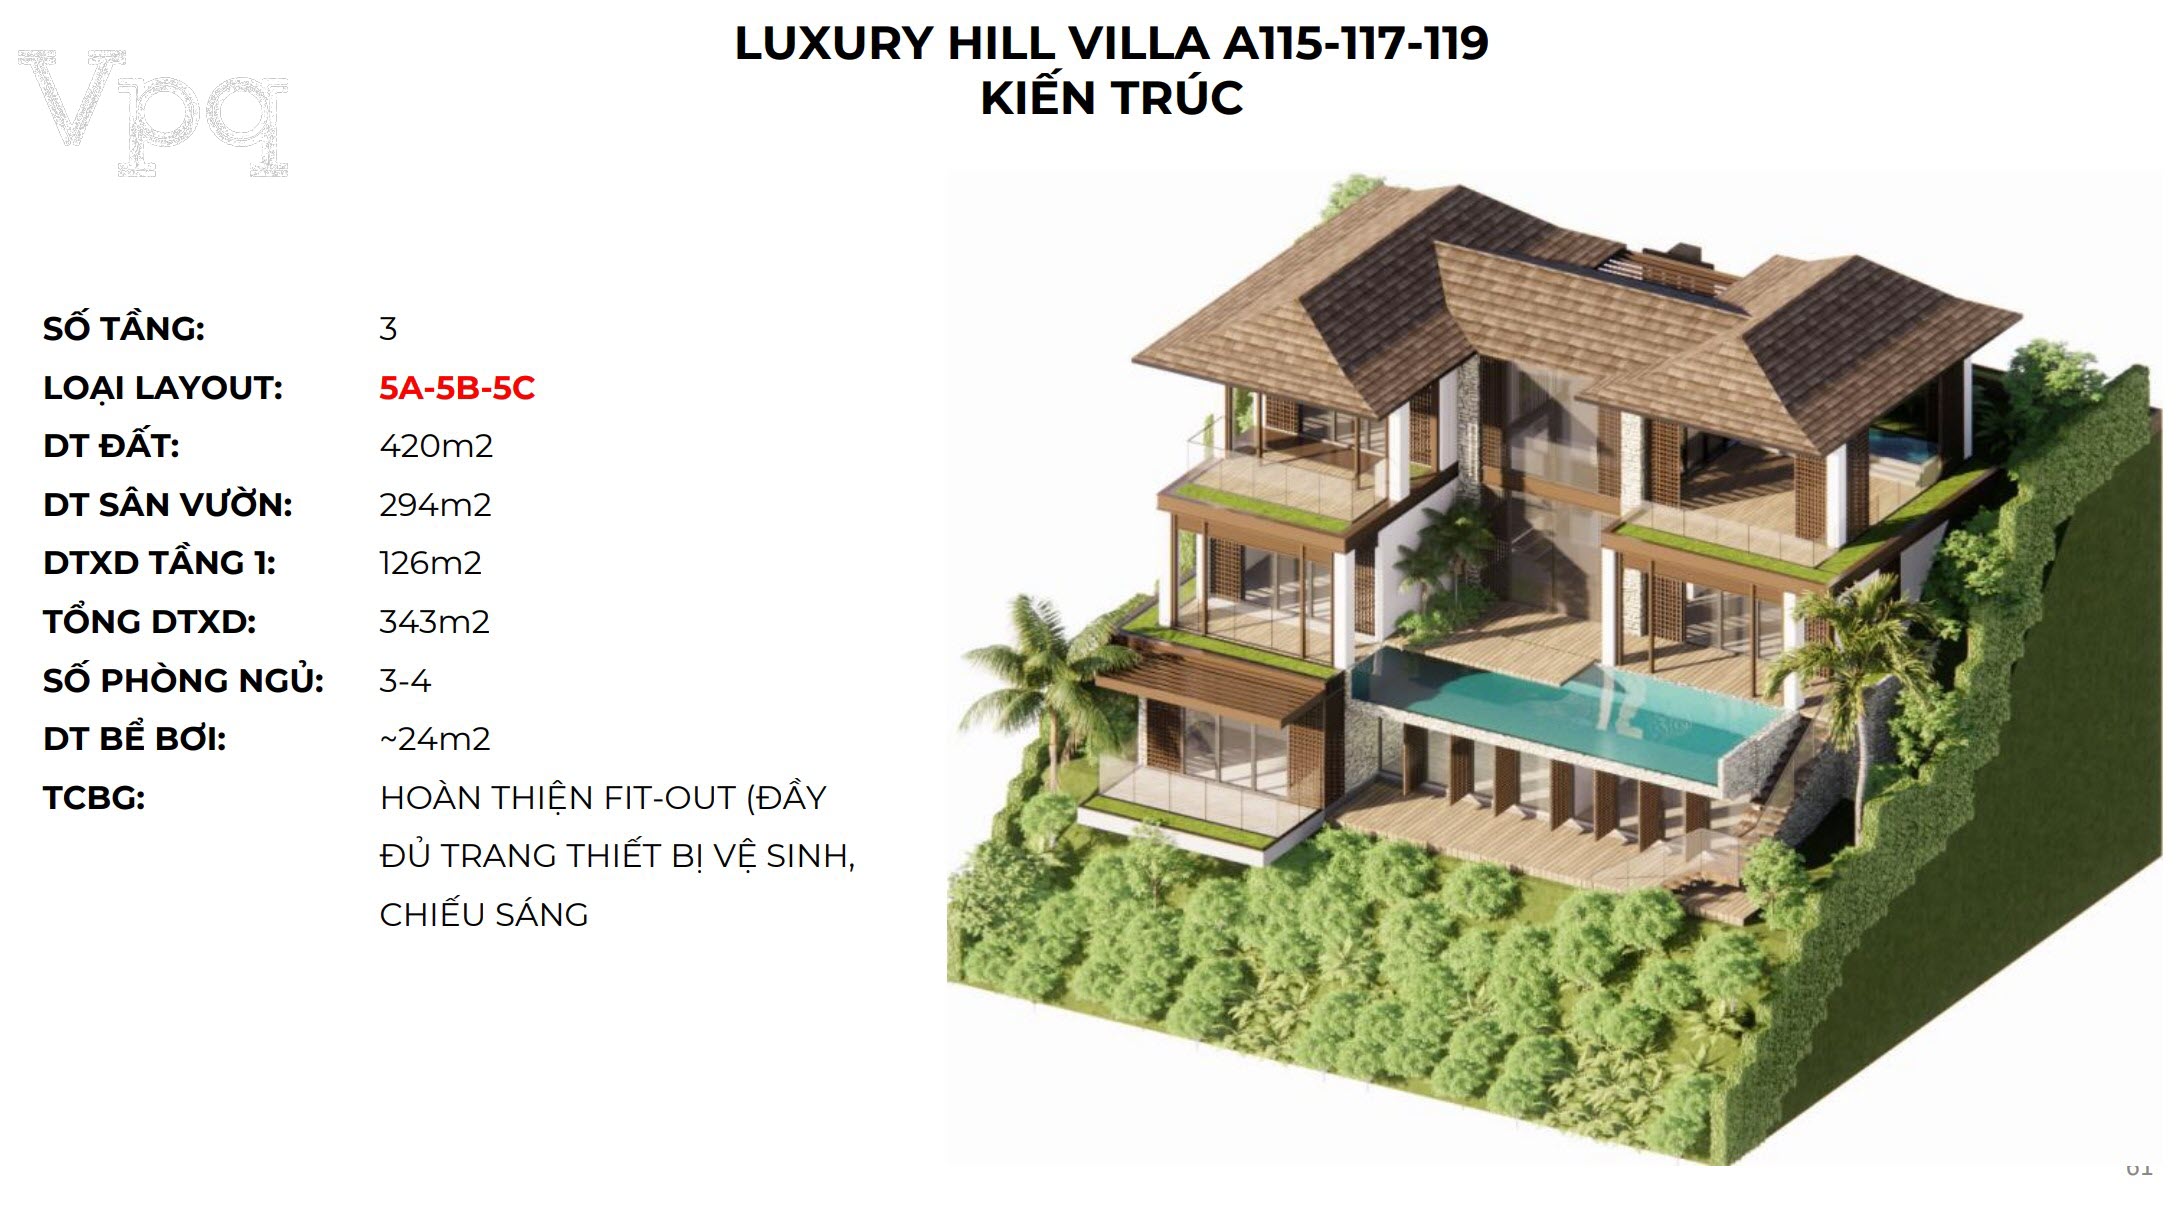 Kiến trúc Luxury Hill Villa A115-A117-A119